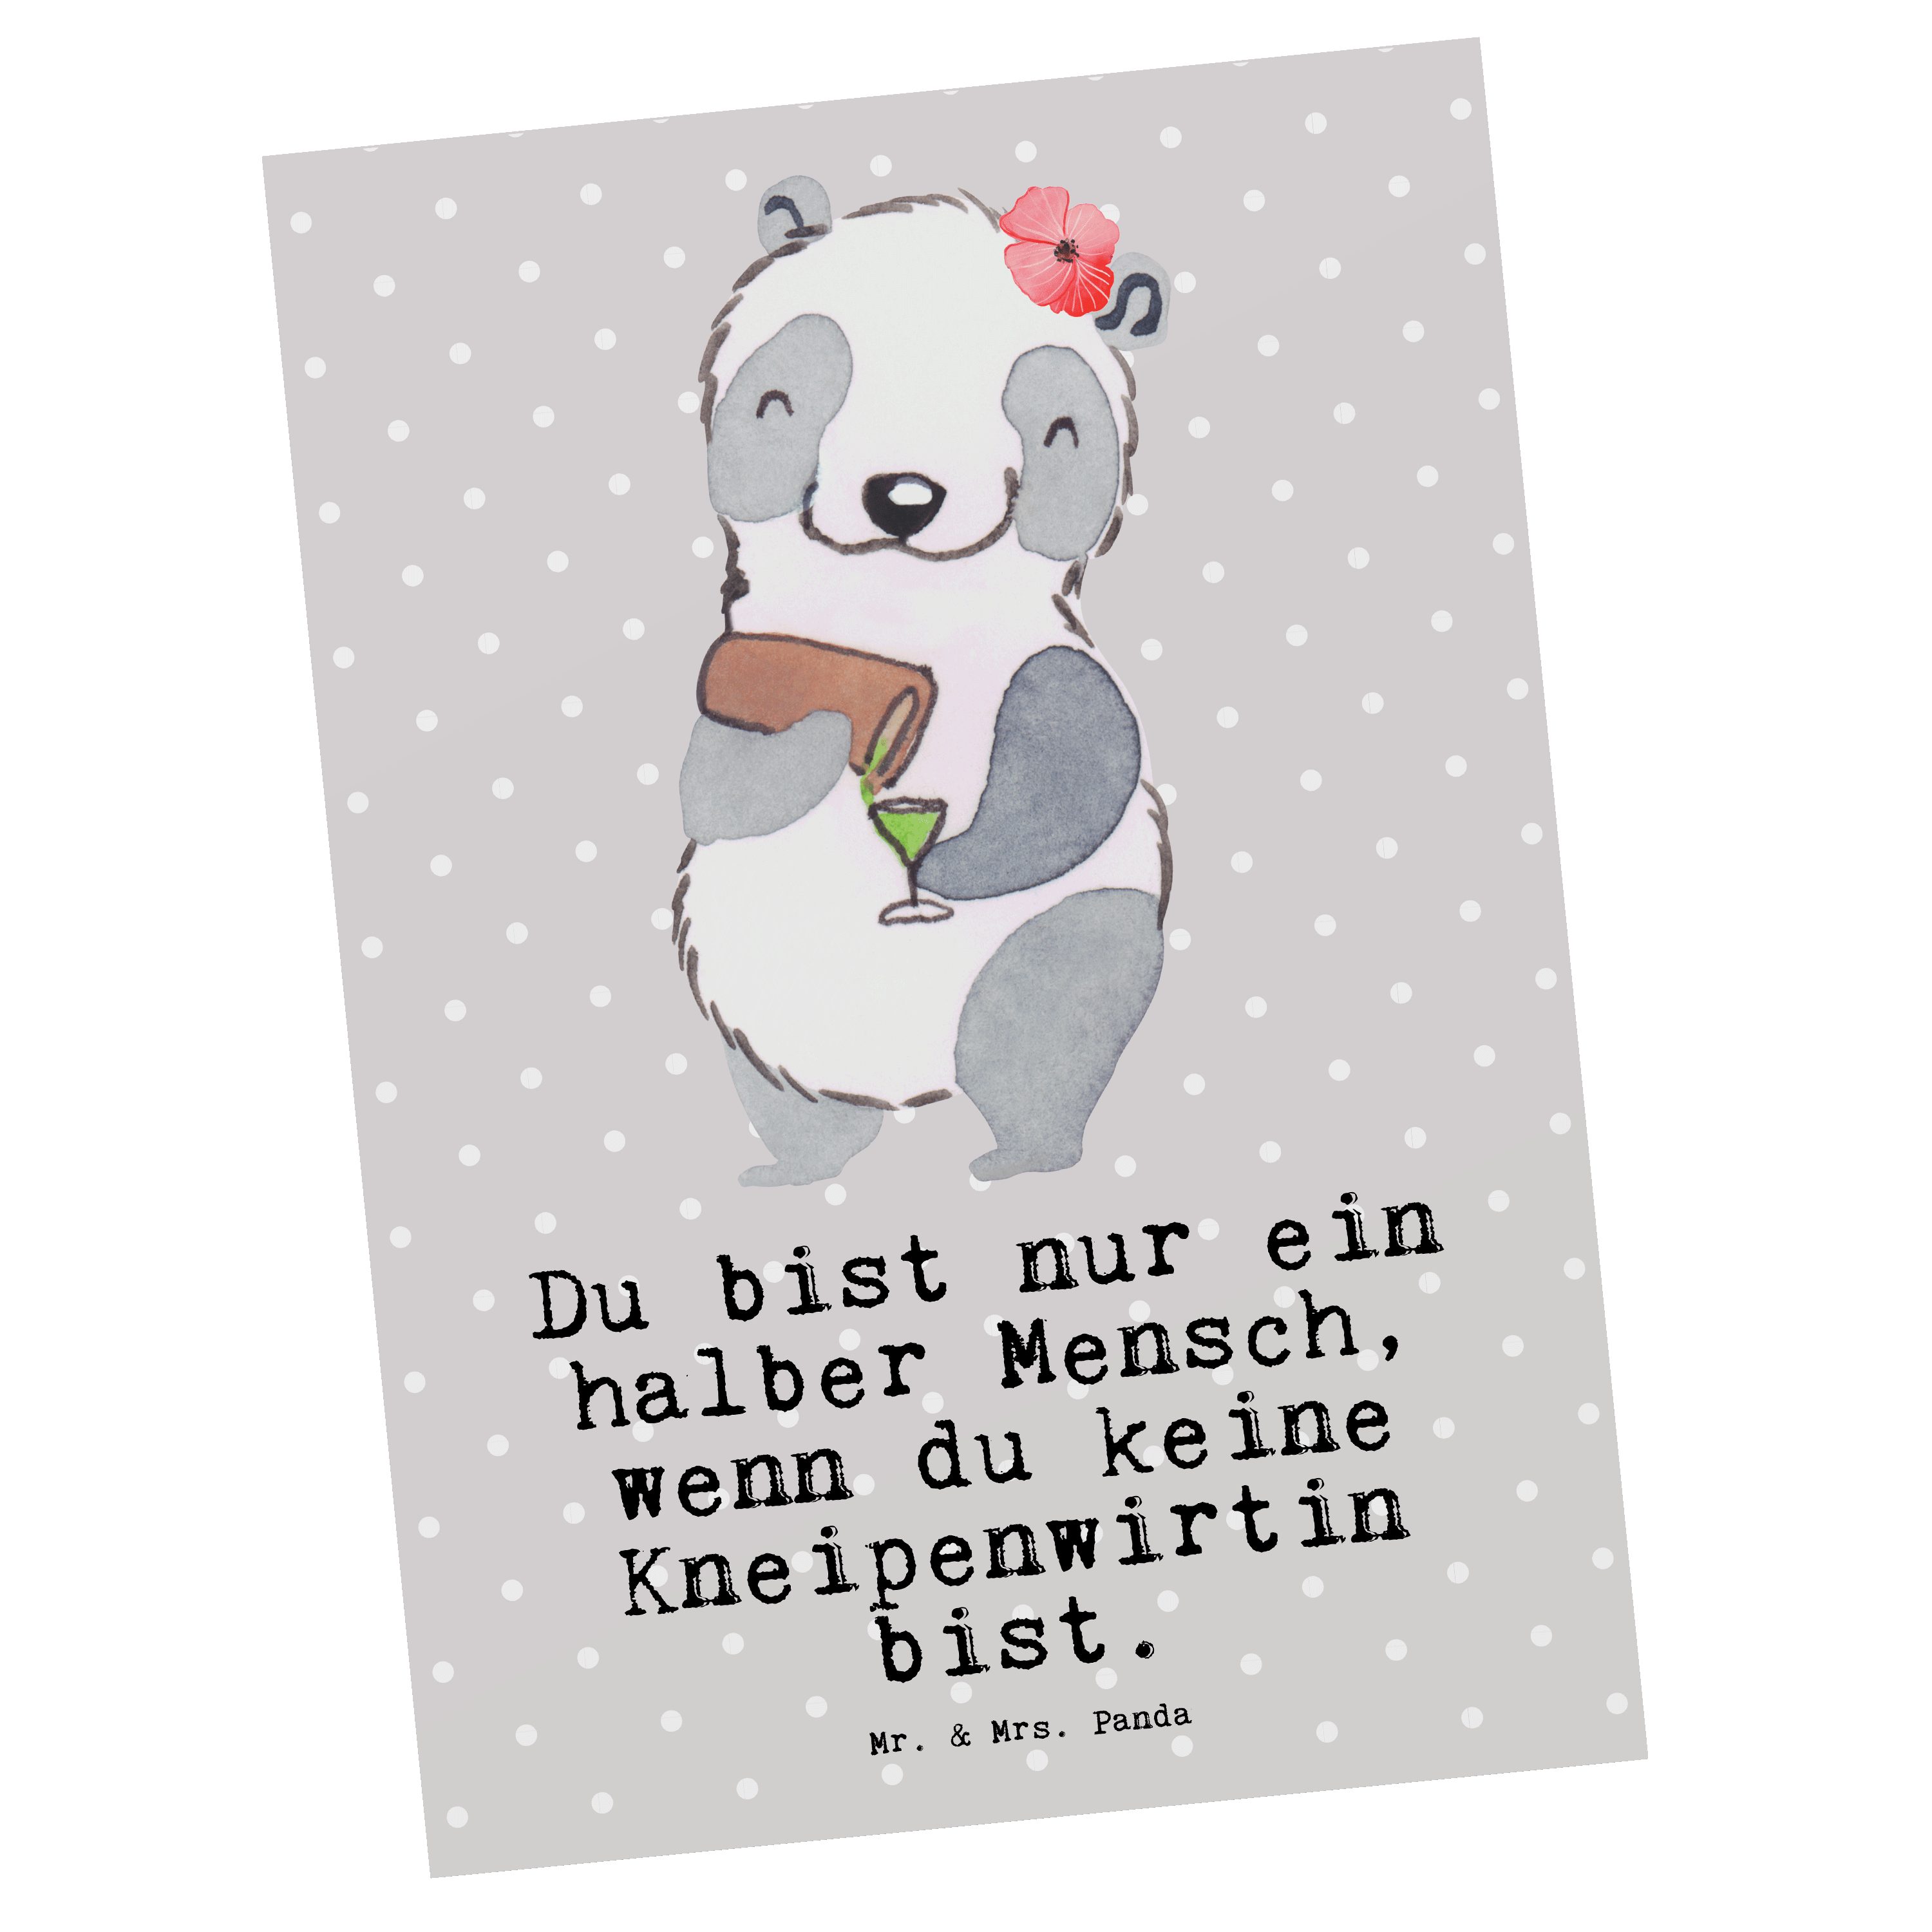 Mr. & Mrs. Panda Postkarte Kneipenwirtin mit Herz - Grau Pastell - Geschenk, Jubiläum, Beruf, Ge